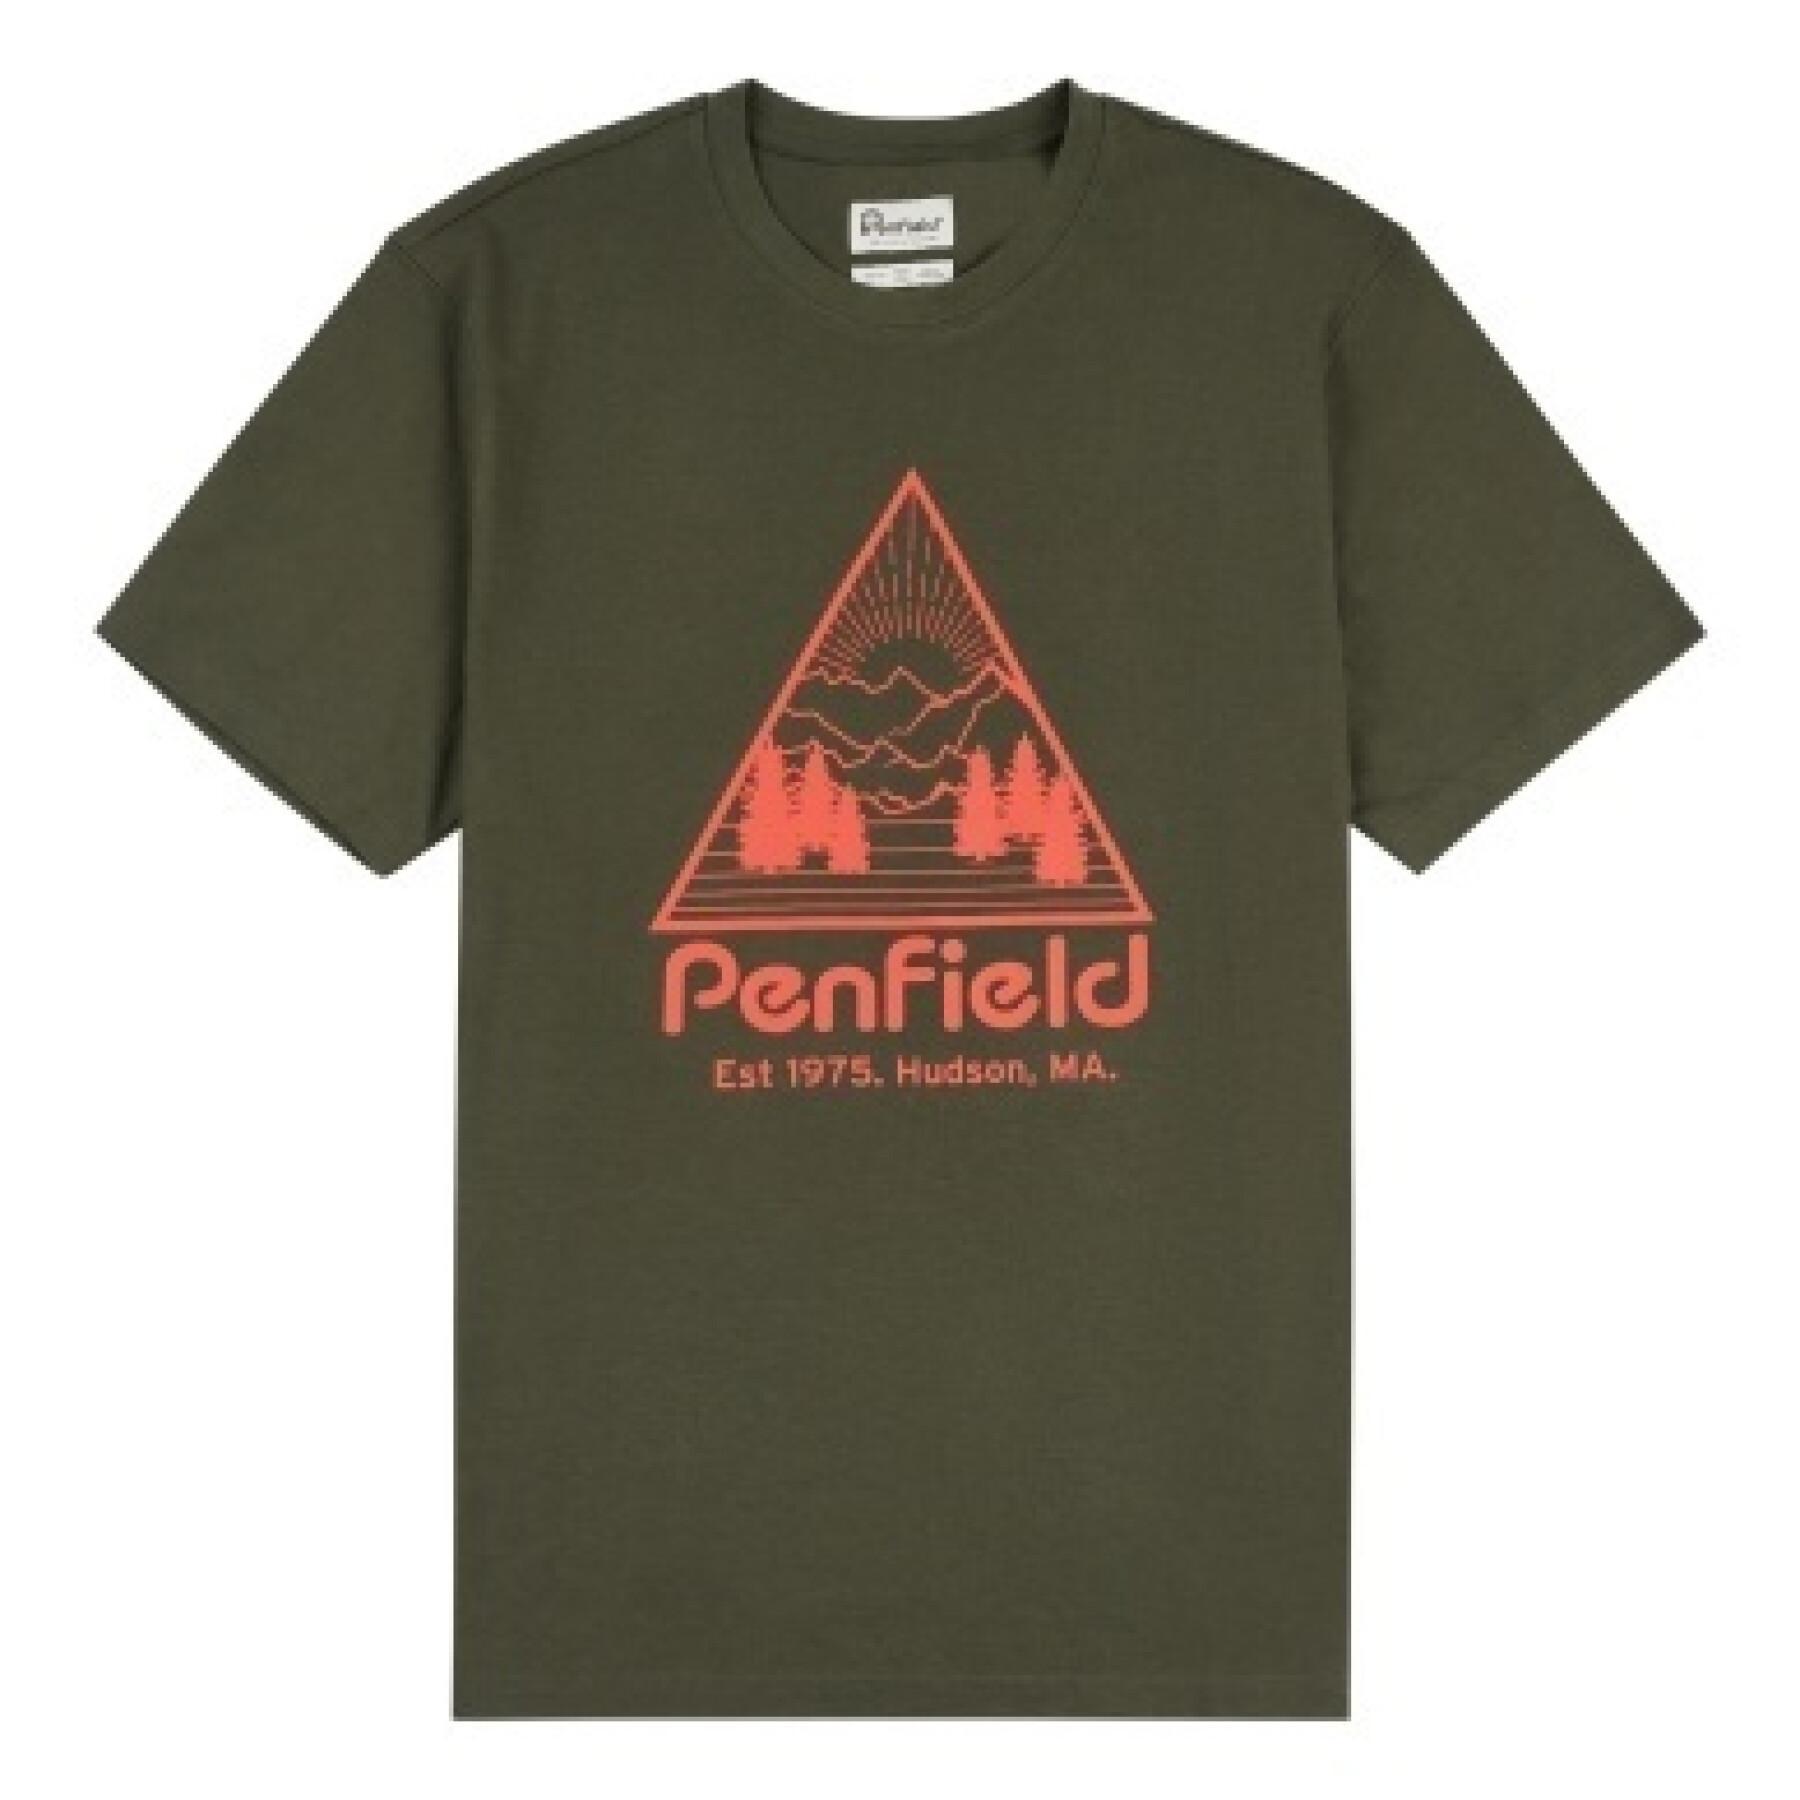 Maglietta Penfield Triangle Mountain Graphic